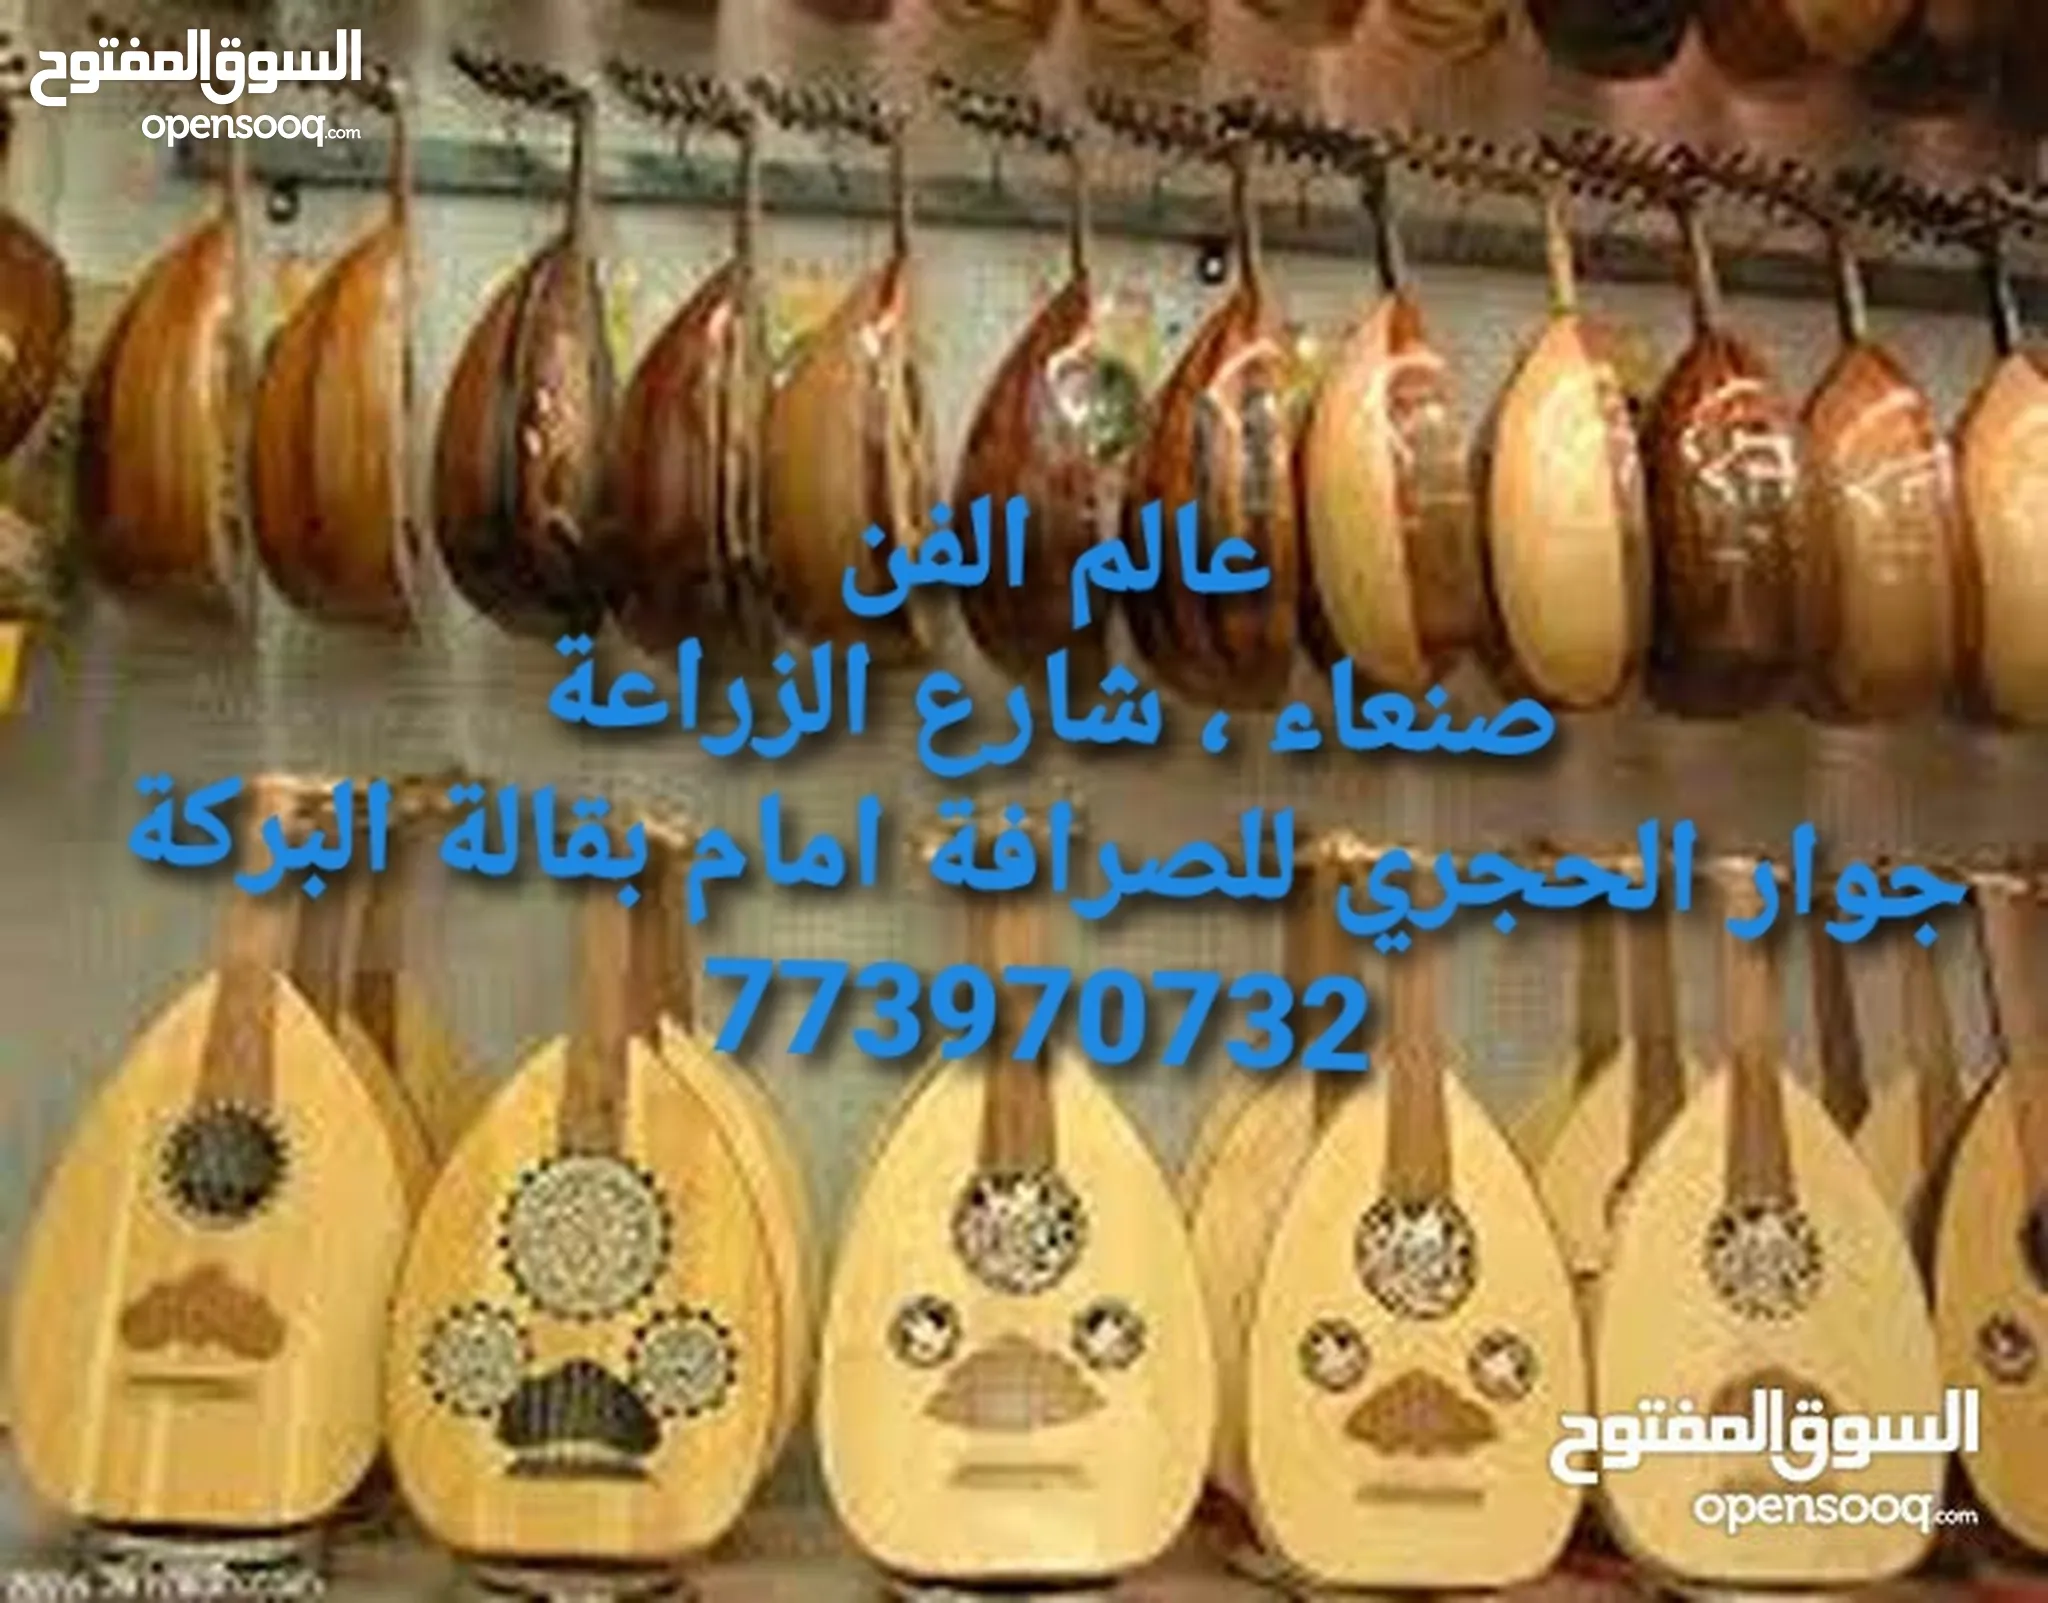 جيتار و عود للبيع : الات موسيقية : افضل الاسعار في اليمن | السوق المفتوح